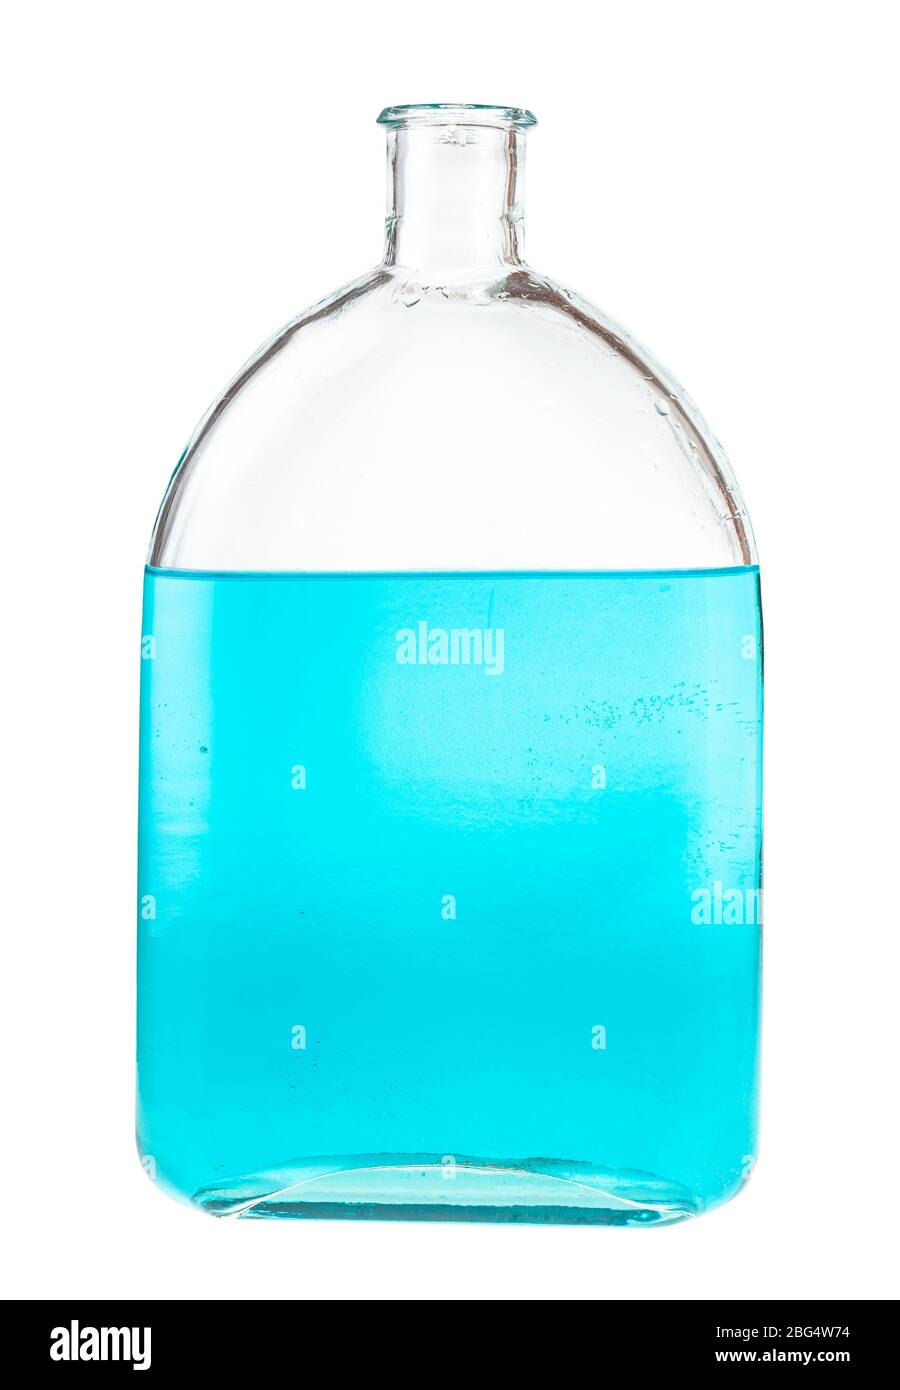 soluzione di inchiostro blu in acqua in matraccio di vetro isolato su fondo bianco Foto Stock